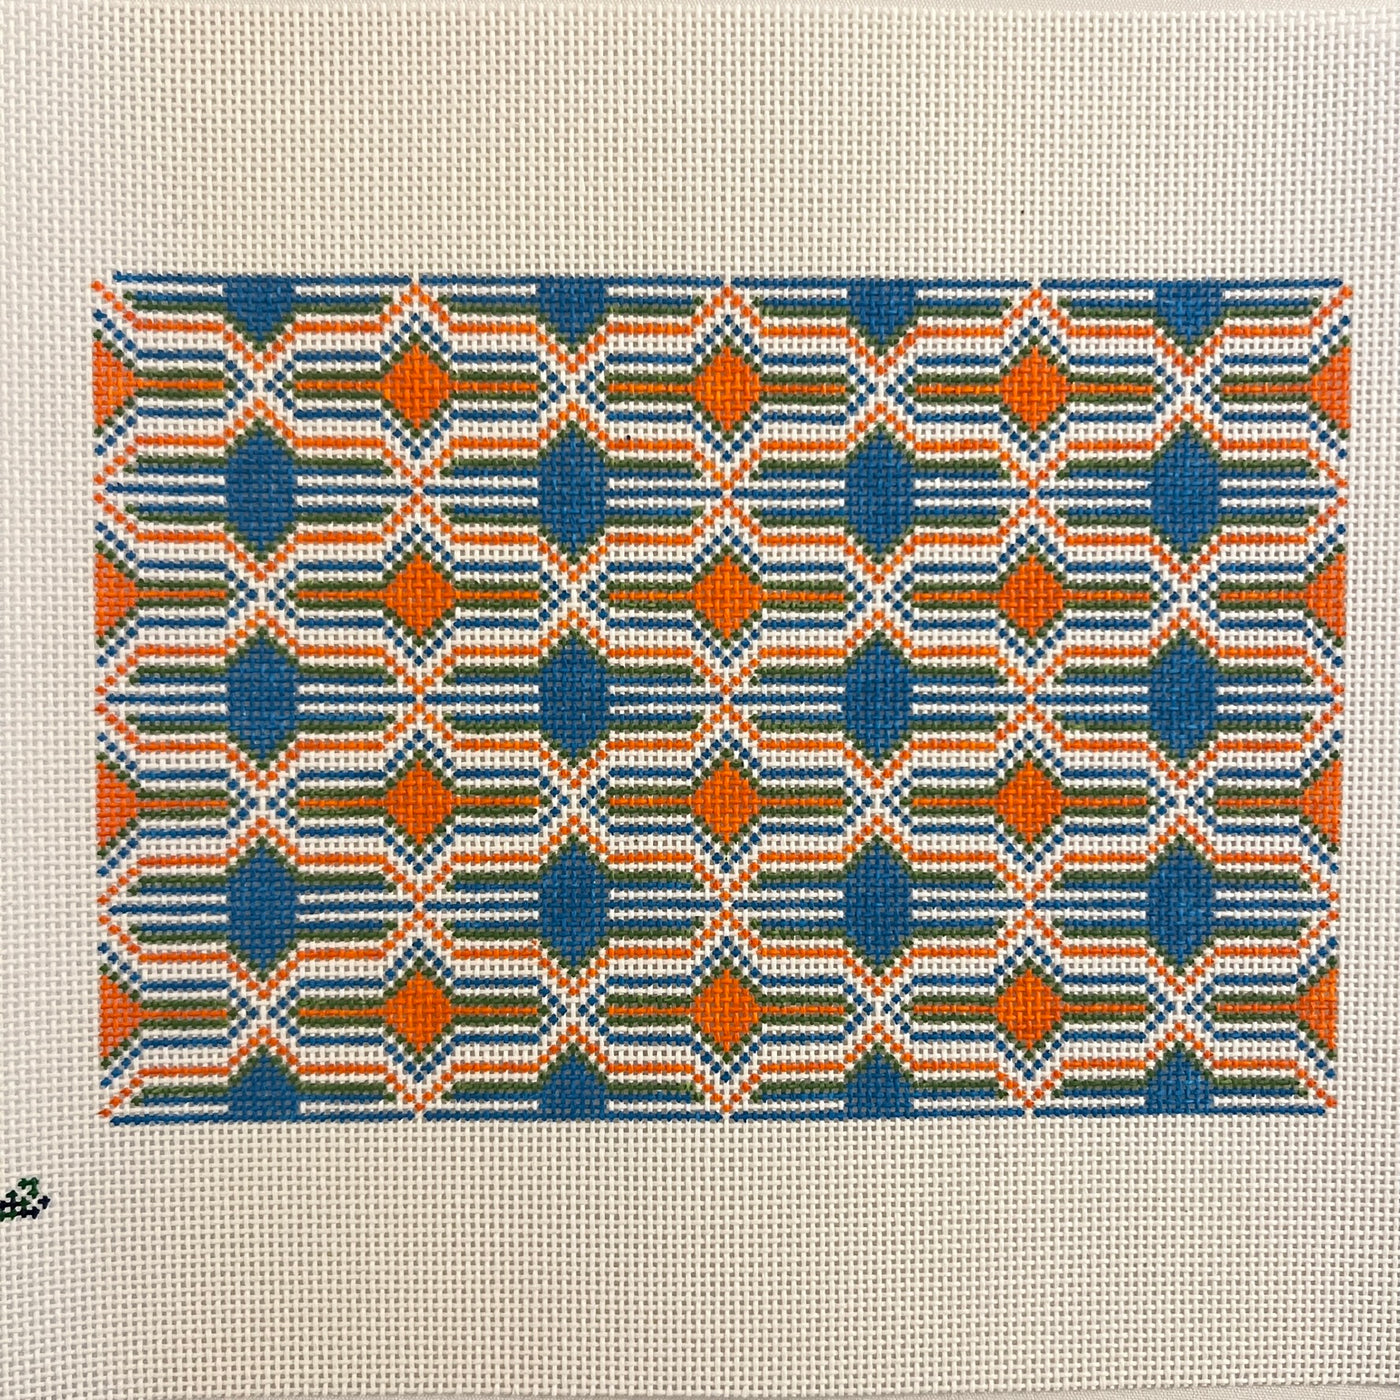 Granada Clutch - Orange Needlepoint Canvas